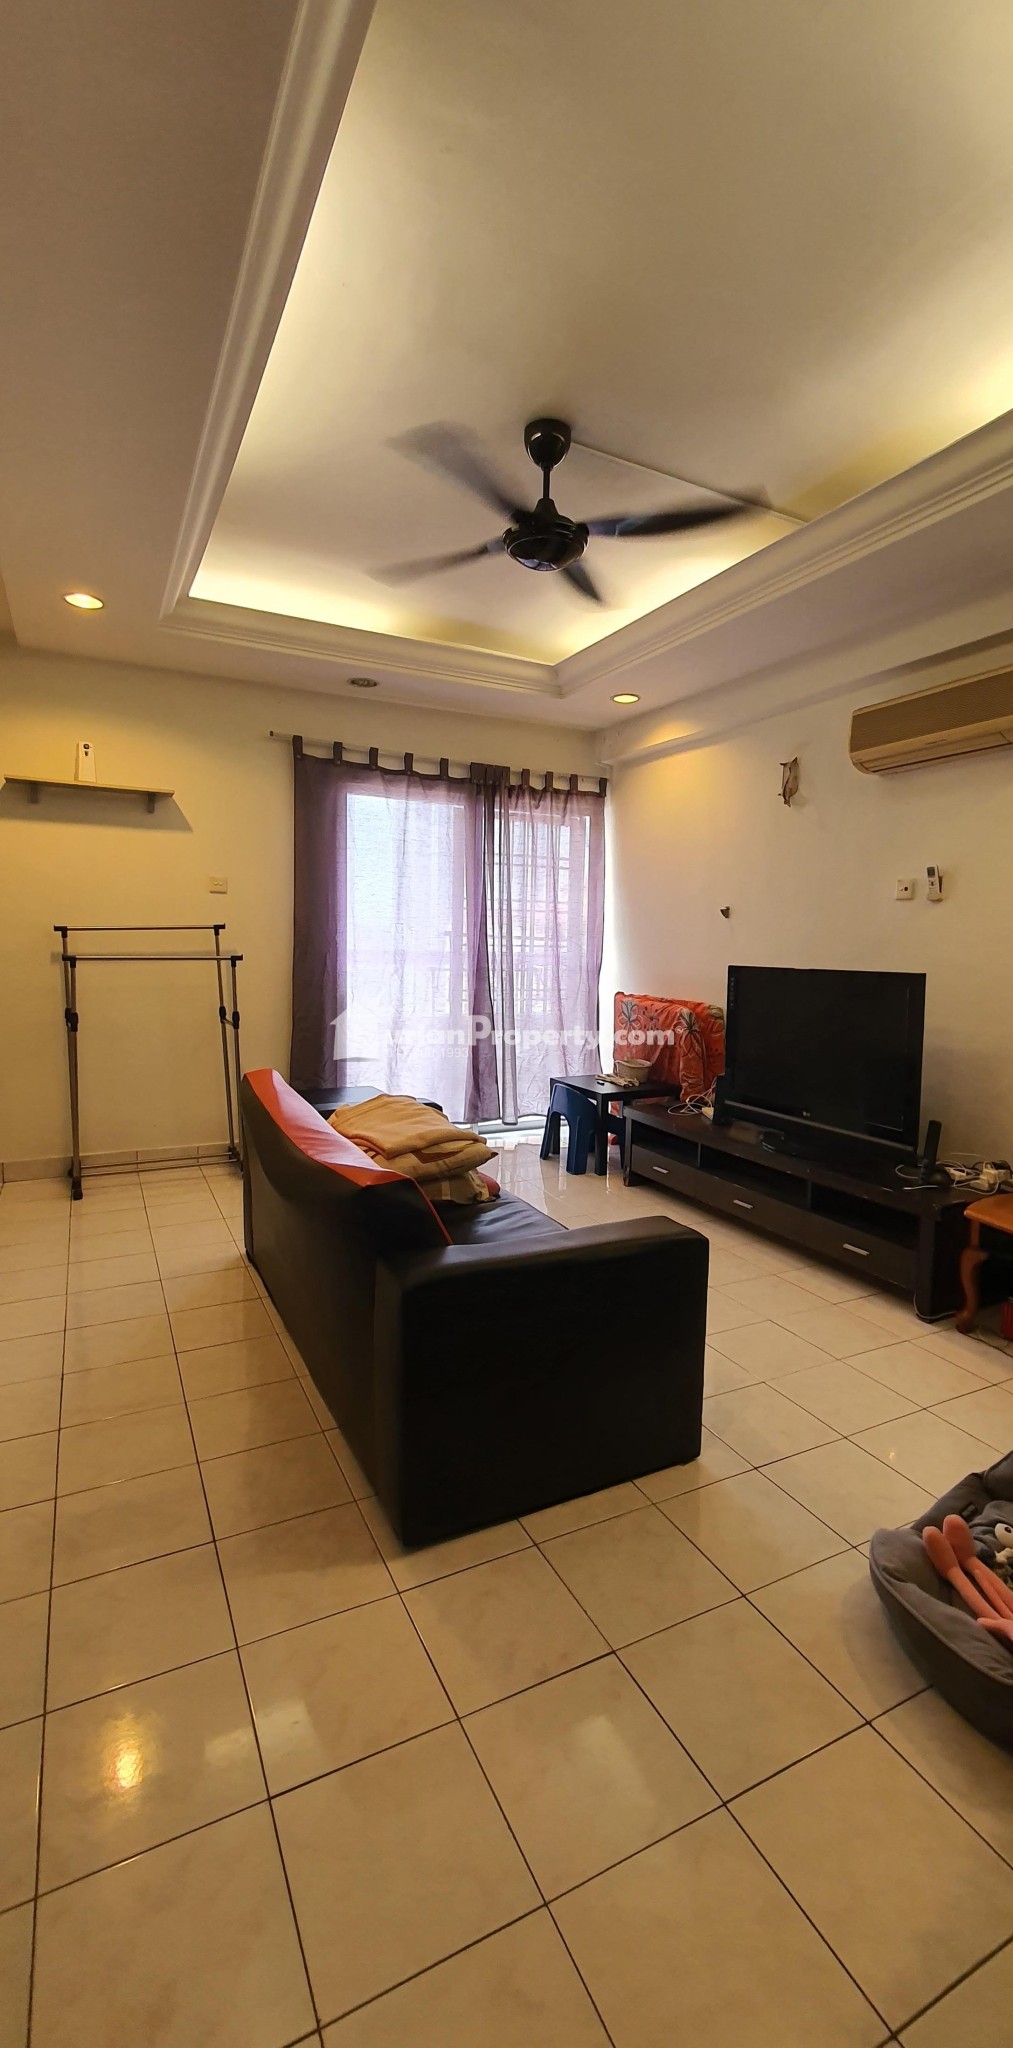 Condo Room for Rent at Pelangi Damansara